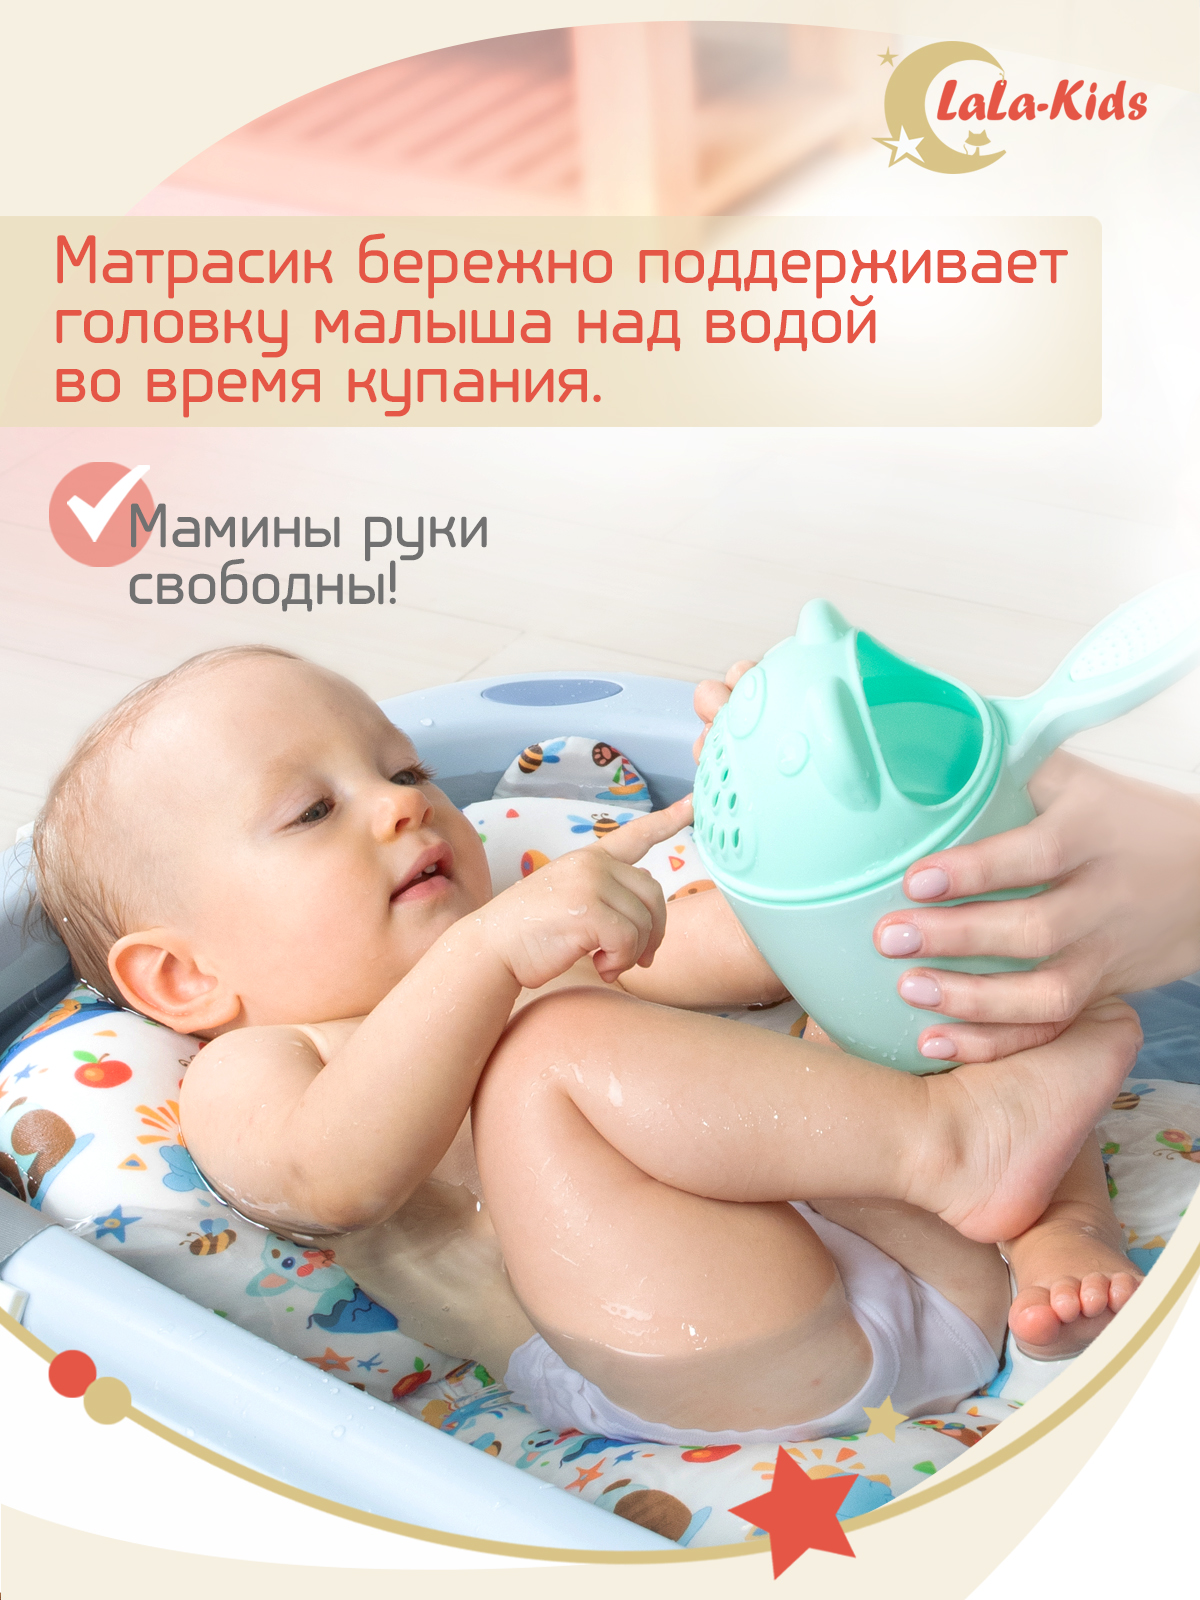 Детская ванночка с термометром LaLa-Kids складная с матрасиком для купания новорожденных - фото 11